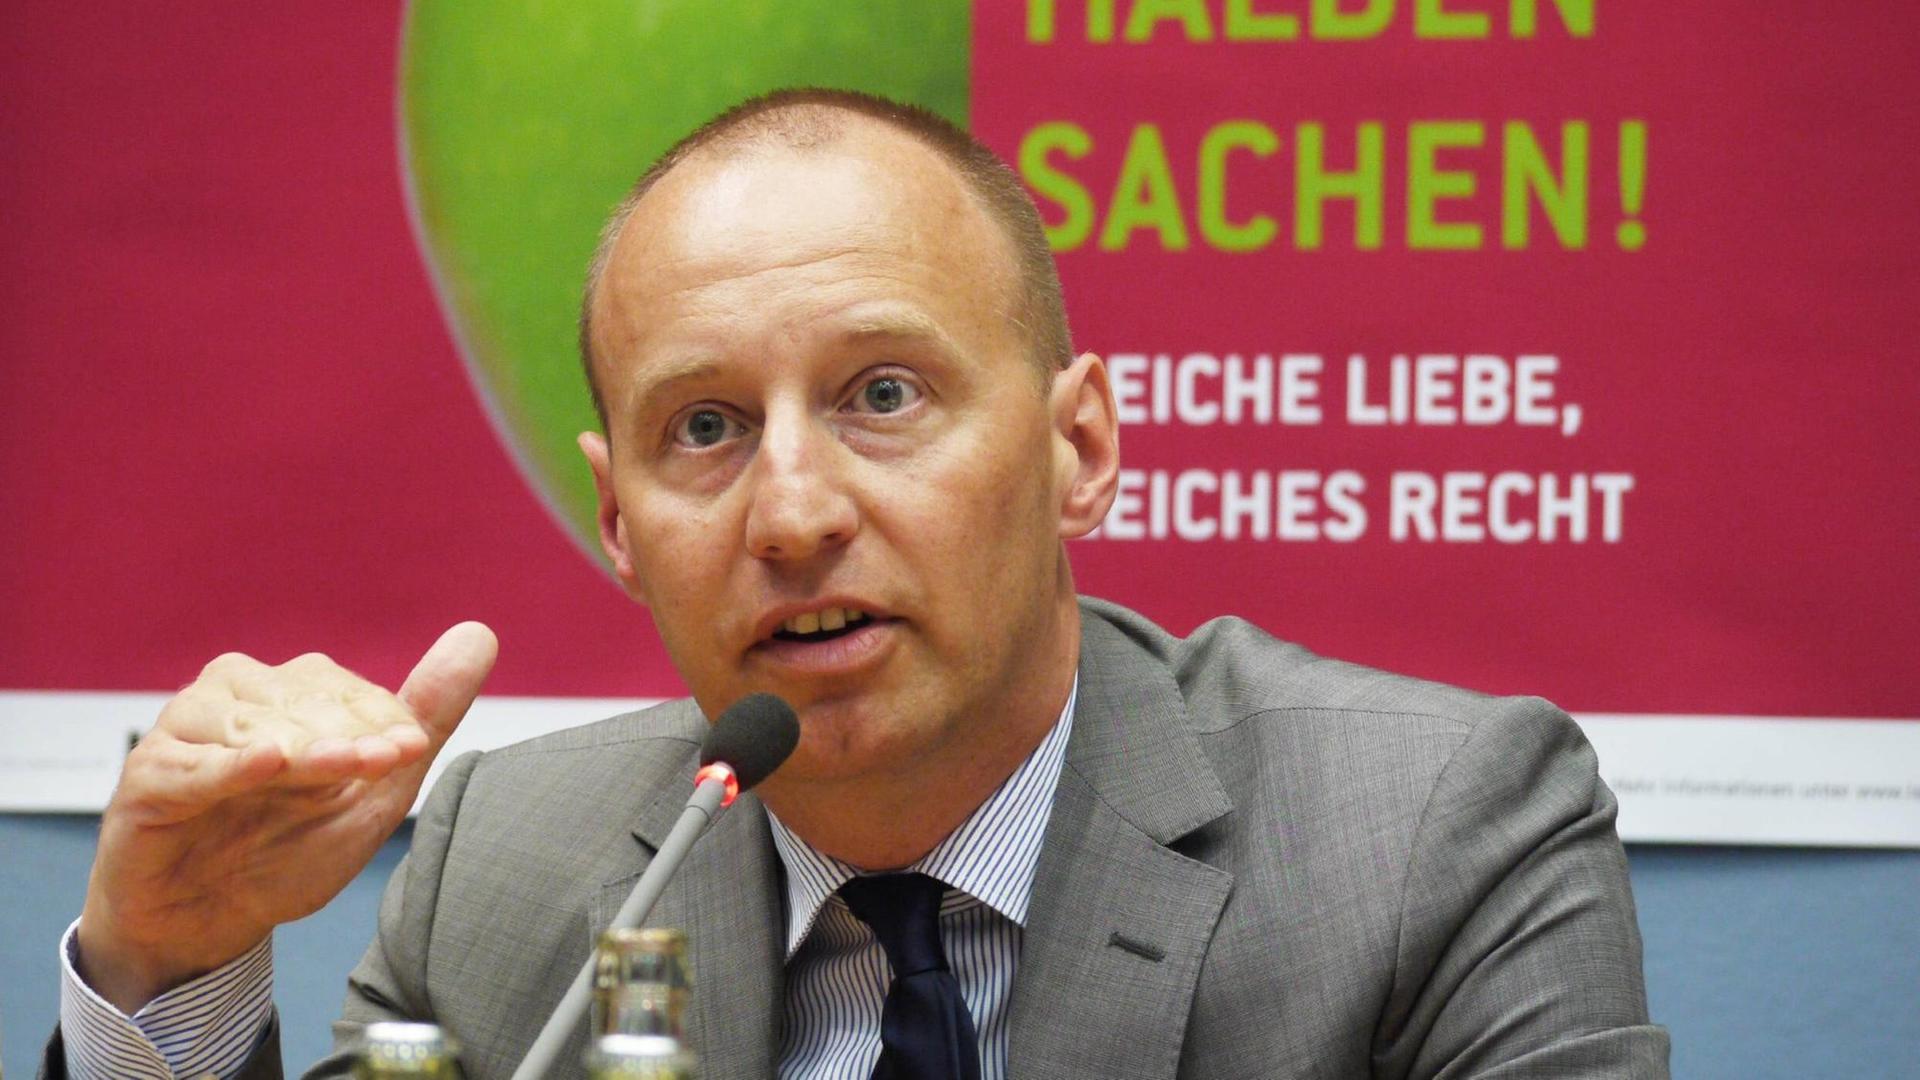 Michael KAUCH, Ex-FDP-MdB, umweltpolitischer Sprecher der FDP-Bundestagsfraktion; lebt in eingetragener Lebenspartnerschaft; aufgenommen während einer Diskussion zur Gleichstellung Homosexueller im Rathaus Schöneberg am 11.06.2012.